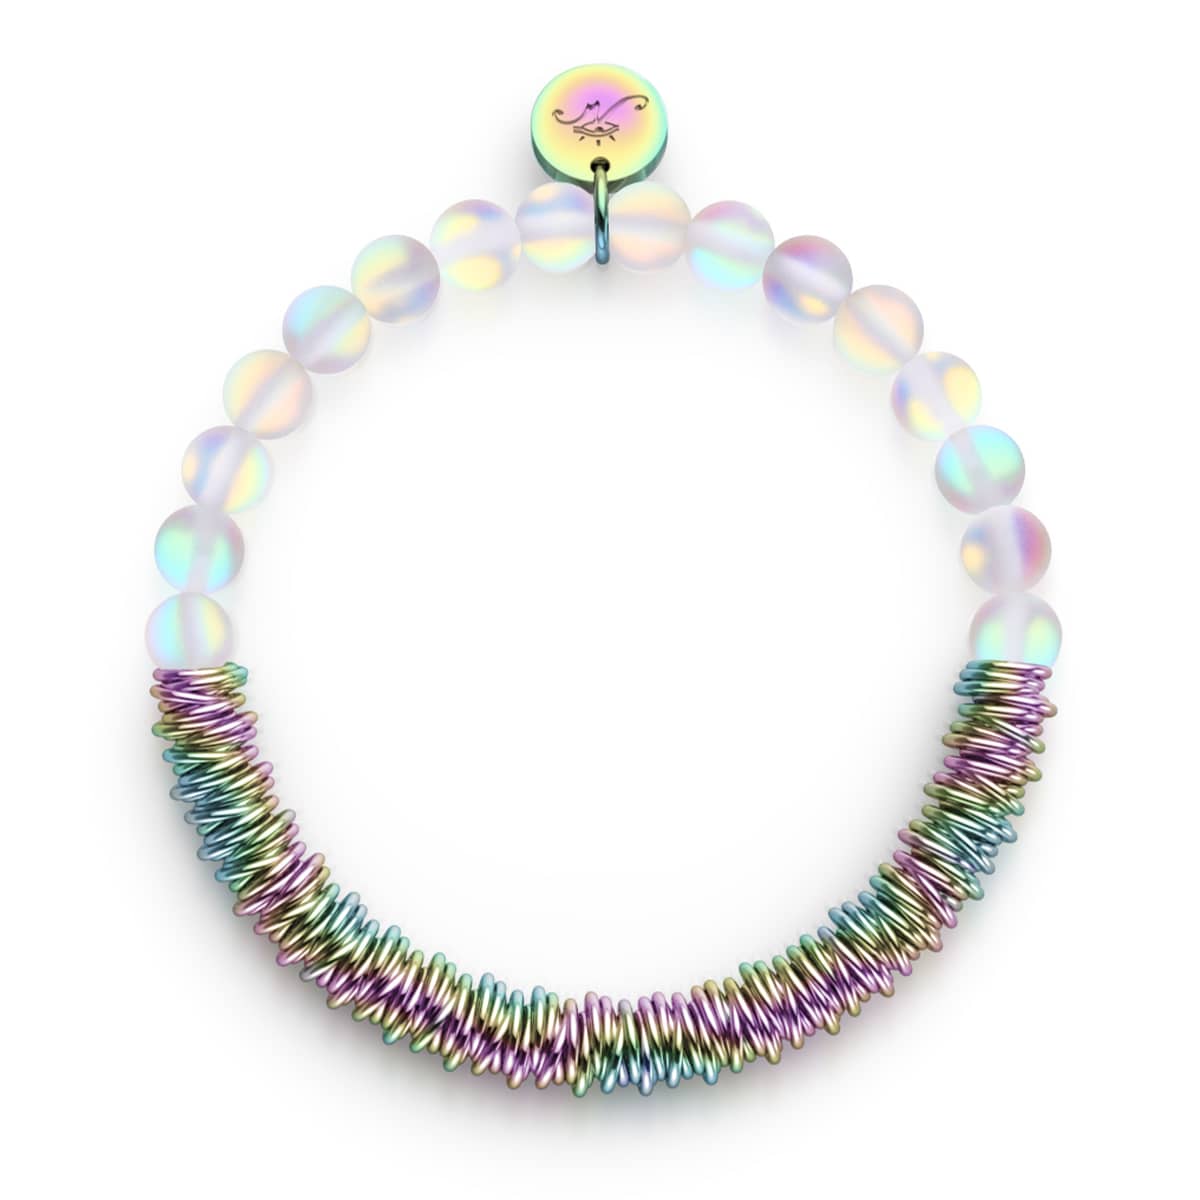 Mermaid Beaded Bracelet Kit using 2-Hole Ginko Glass Beads (Pastel Mix –